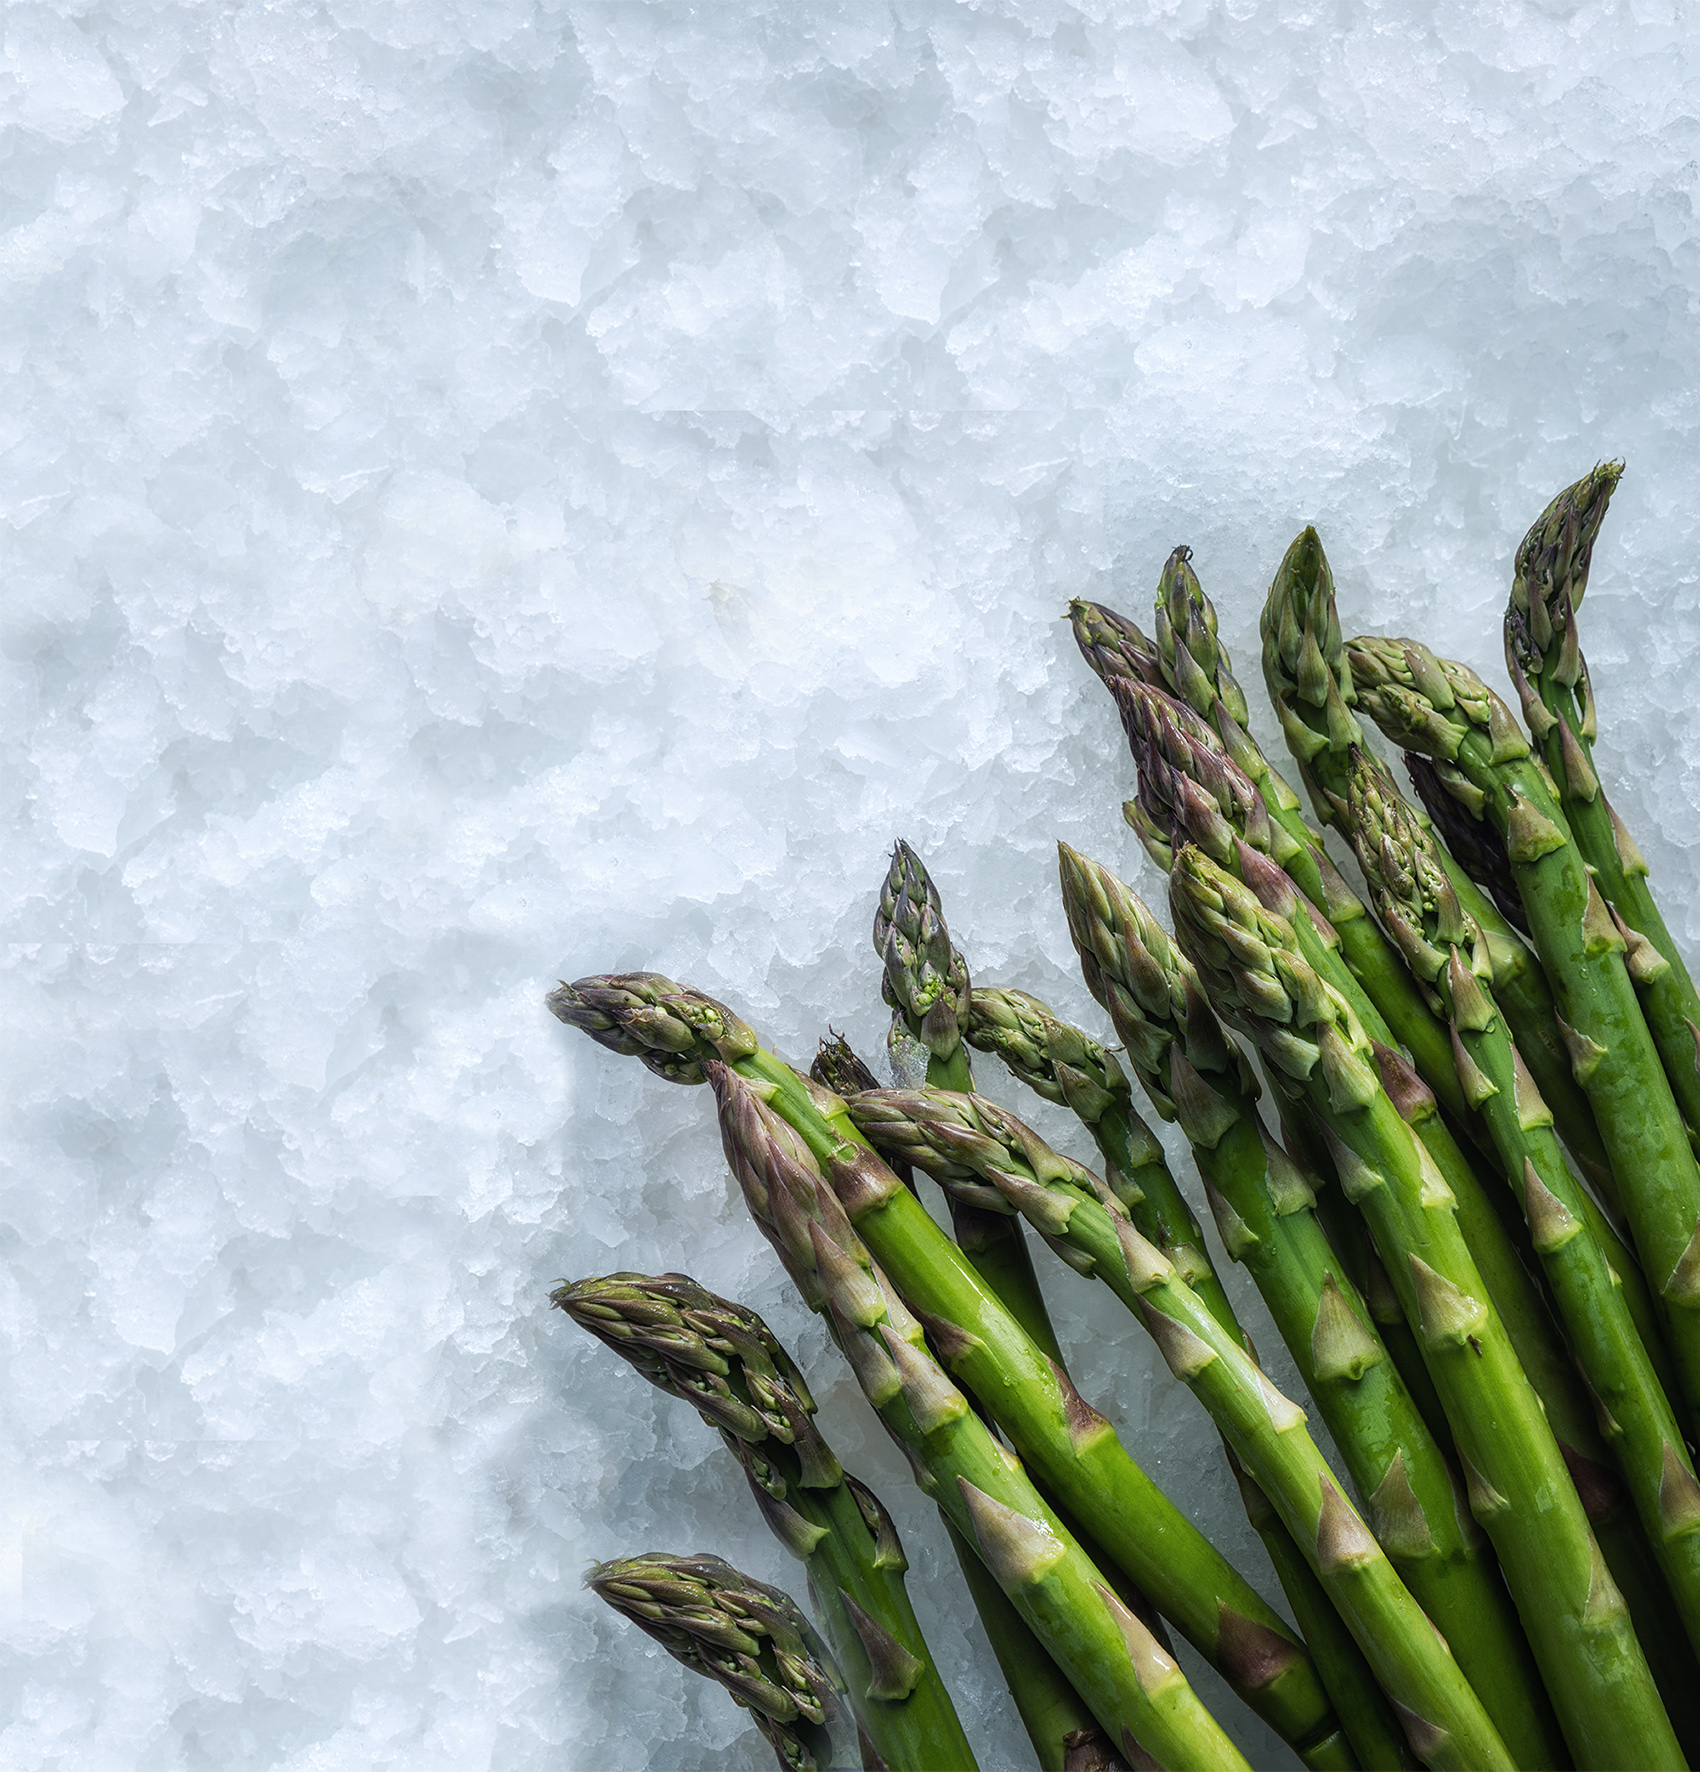 Asparagus on MAJA ice